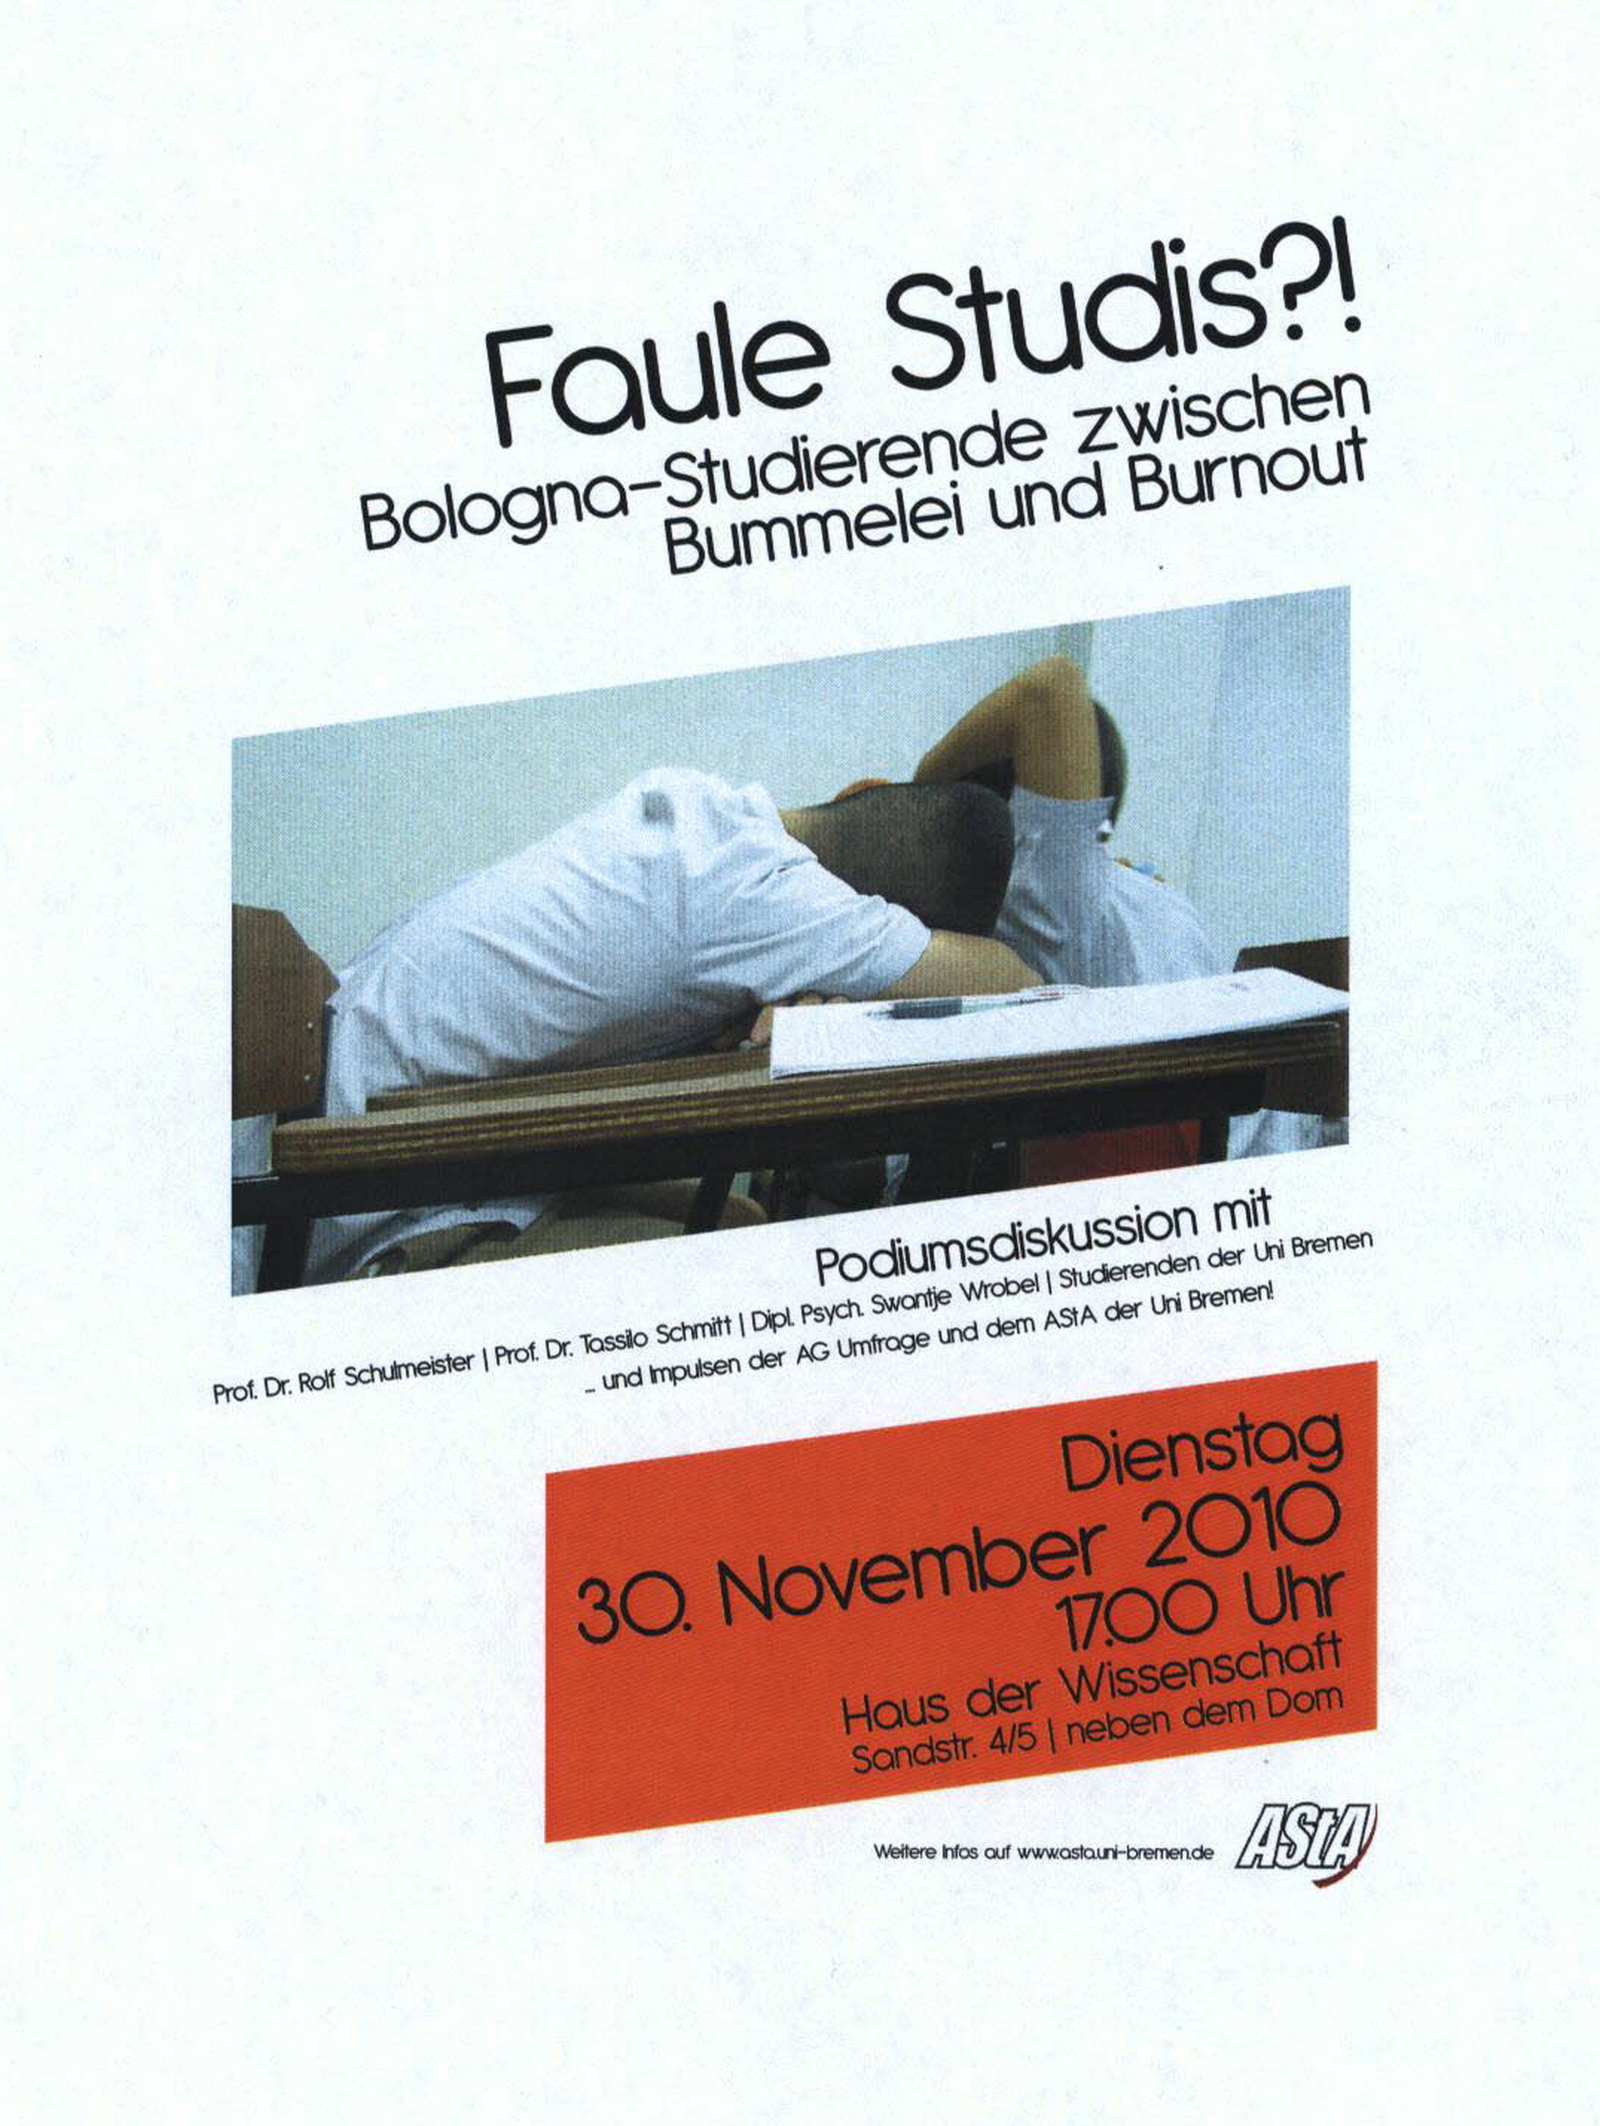 Ein Plakat zur Bologna Reform. Es weist unter dem Titel „Faule Studis?! Bologna-Studierende zwischen Bummelei und Burnout“ auf eine Veranstaltung von 2010 des AStA hin.